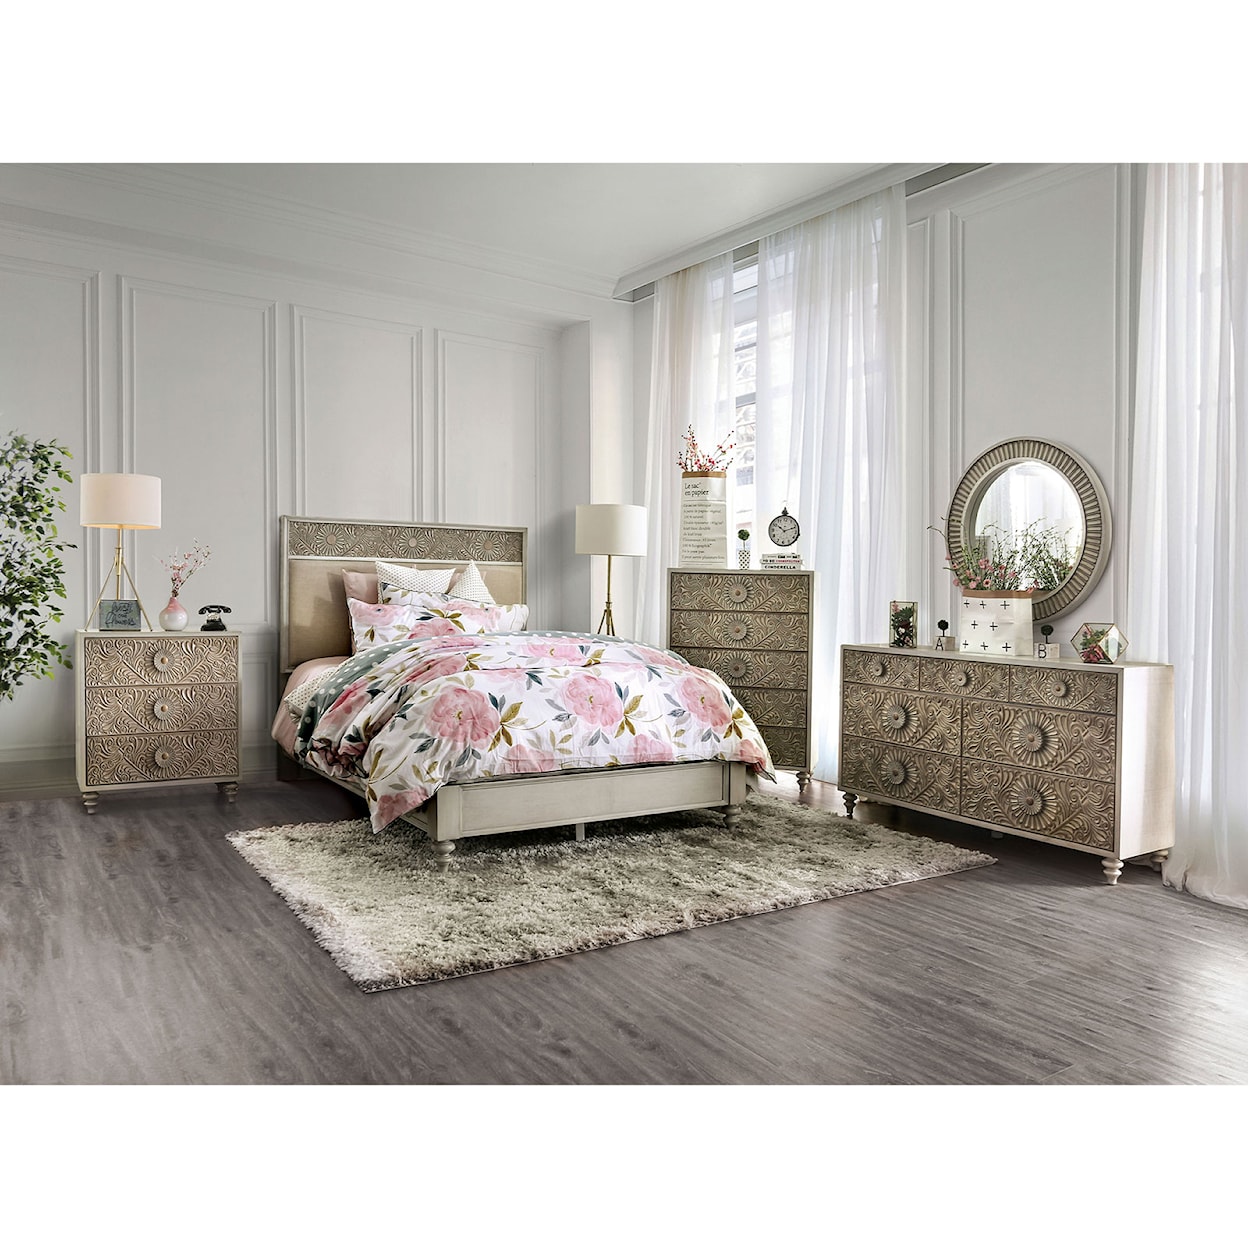 Furniture of America Jakarta Queen Bedroom Set